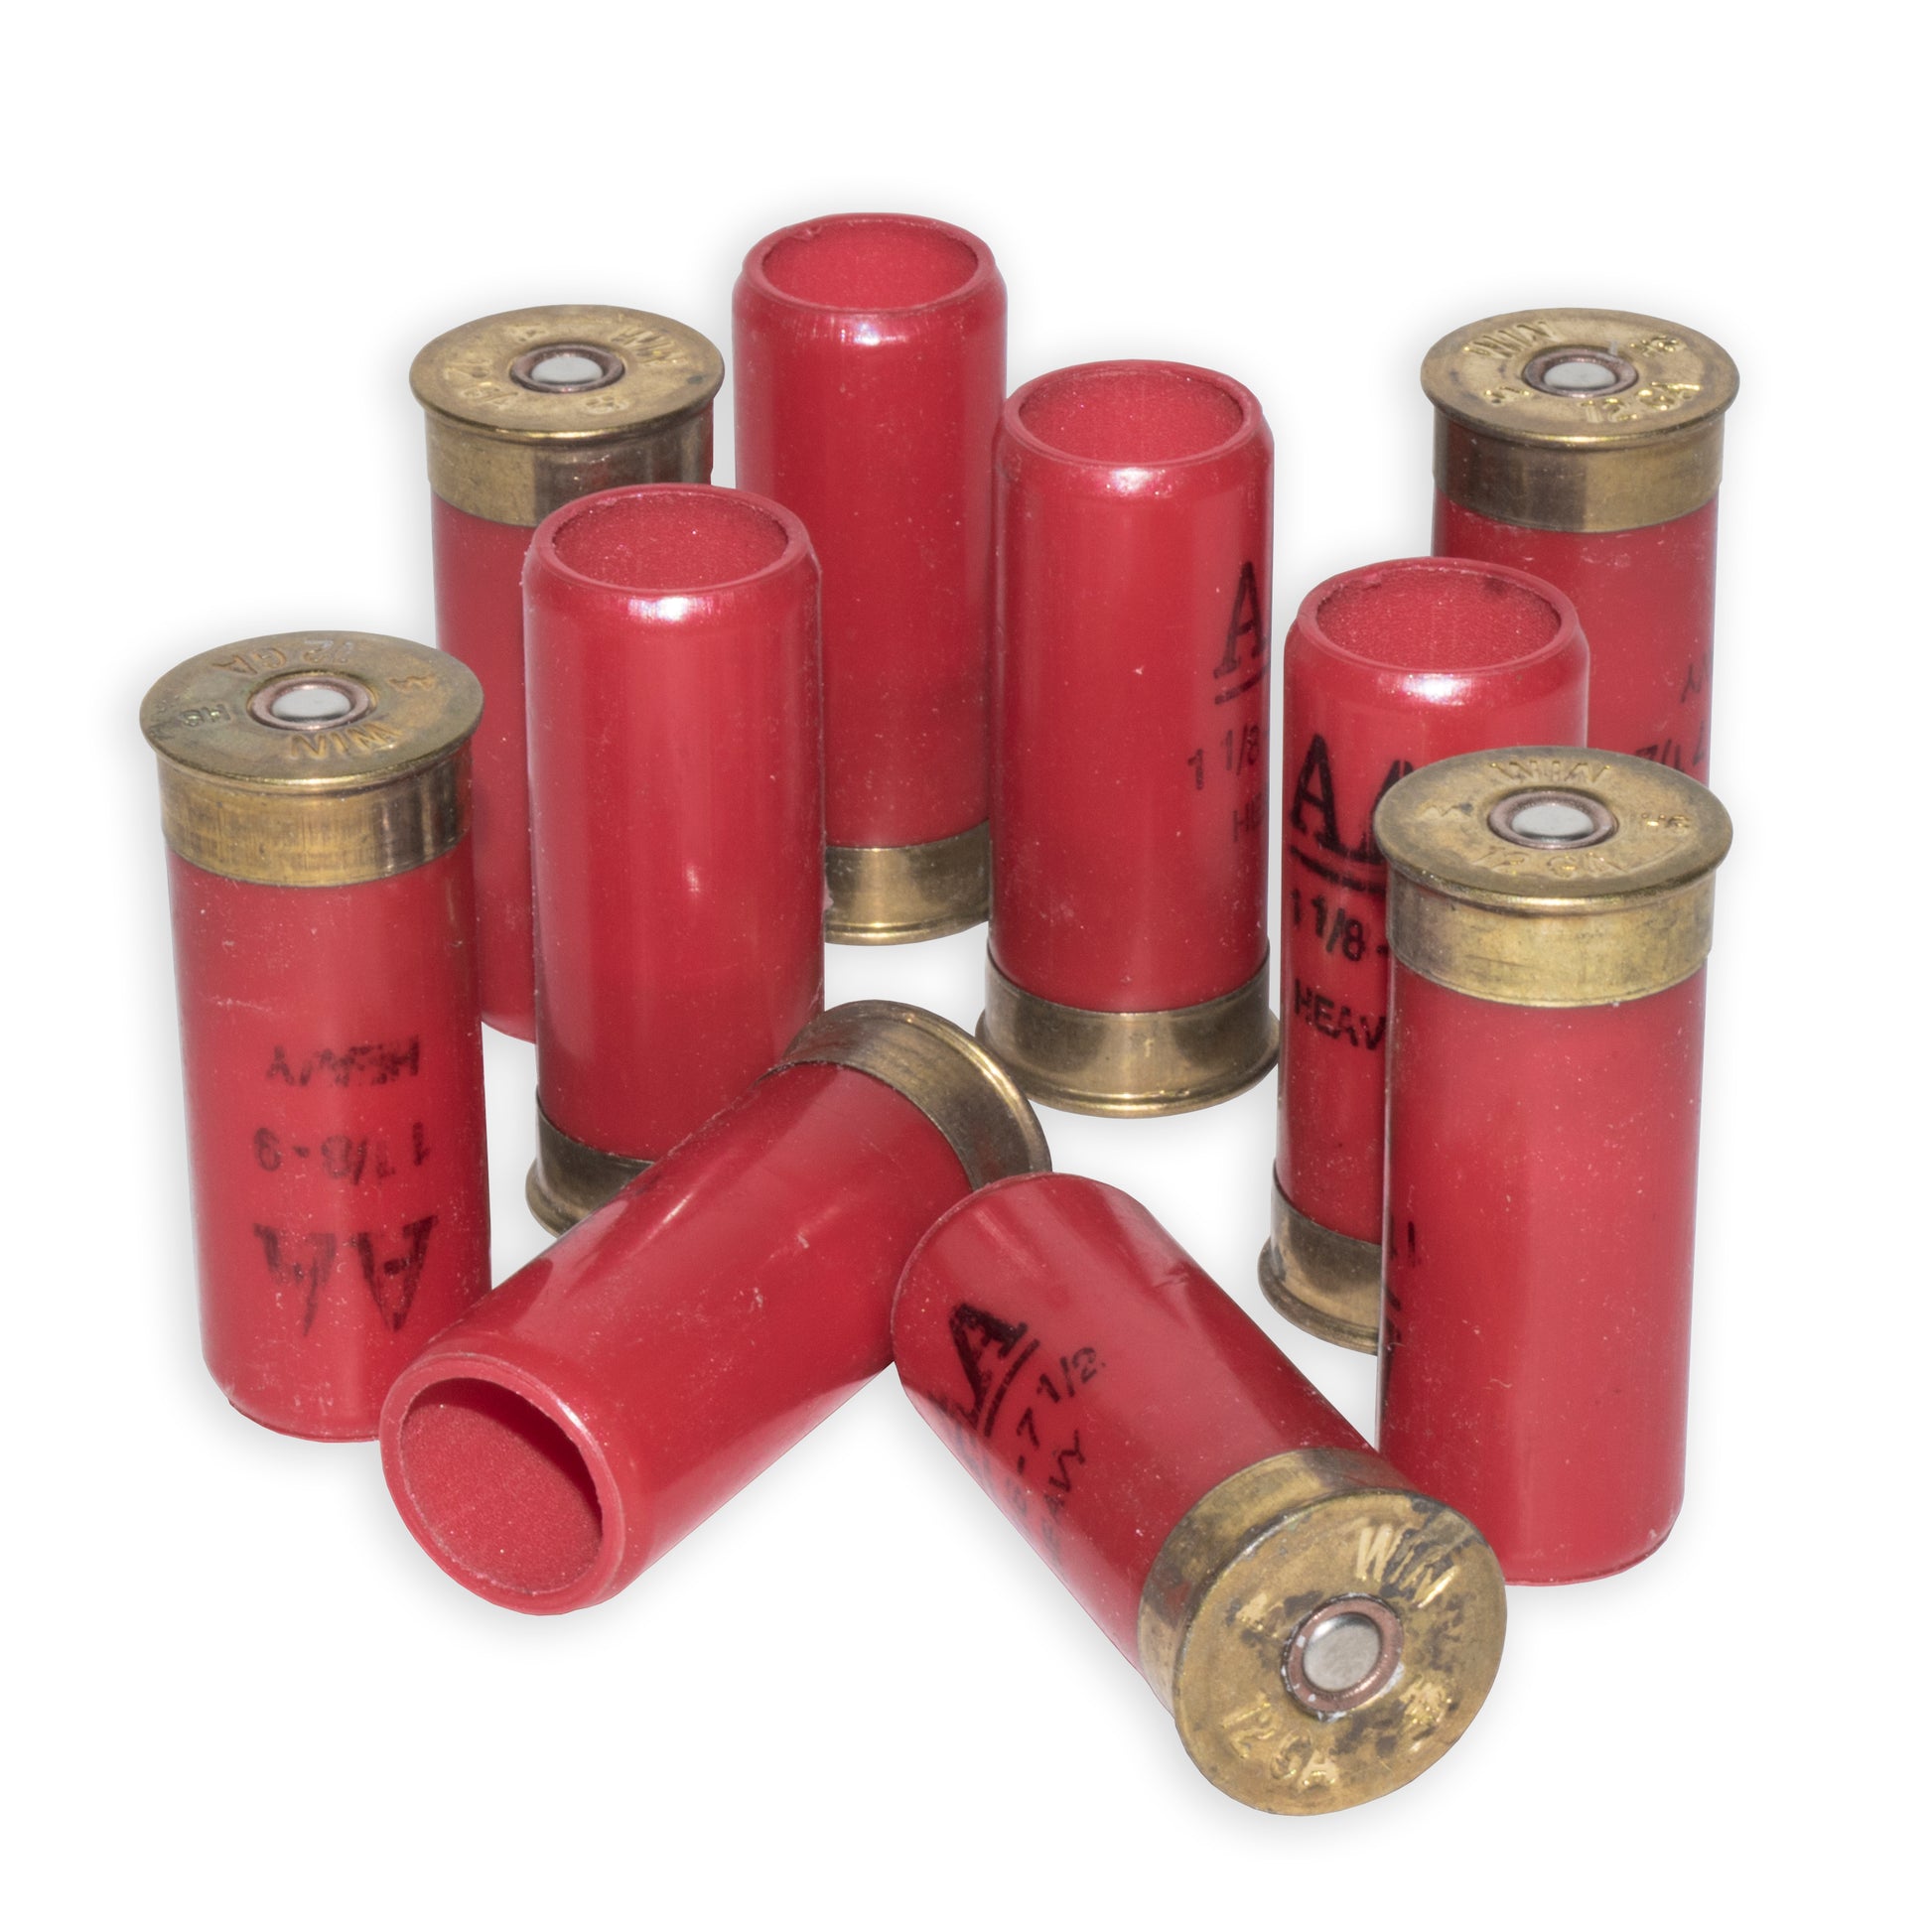 12 Gauge Metal Base Blank Ammunition with Smoke